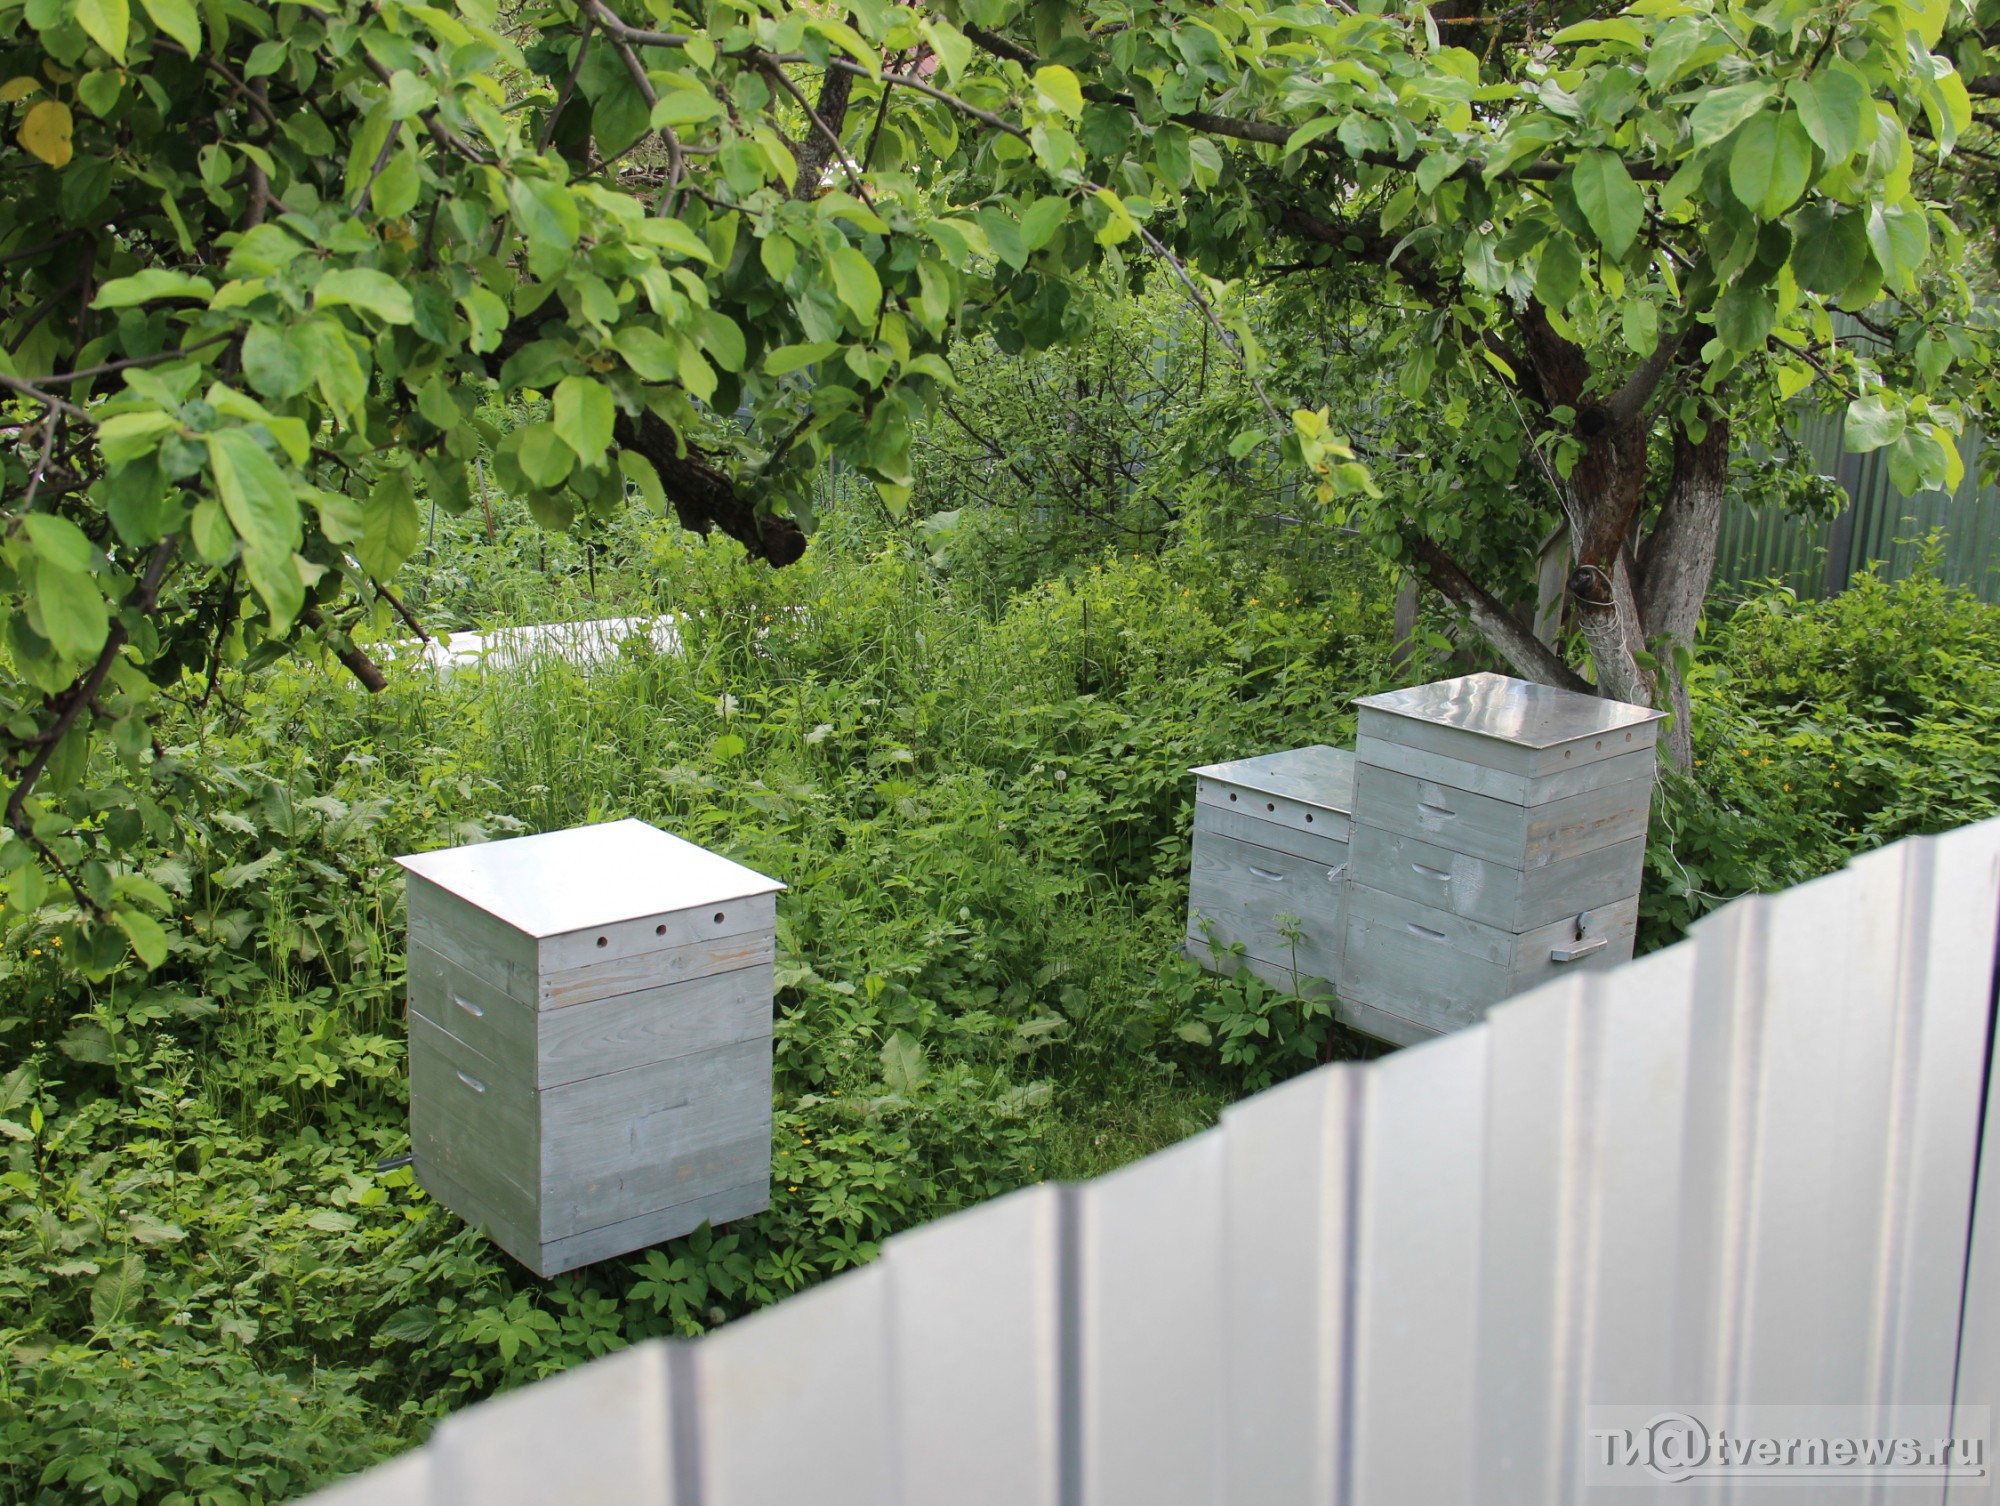 Соседские пчелы. Пчеловодство Тверь. Расположение ульев на пасеке. Пчелы рядом с соседями.